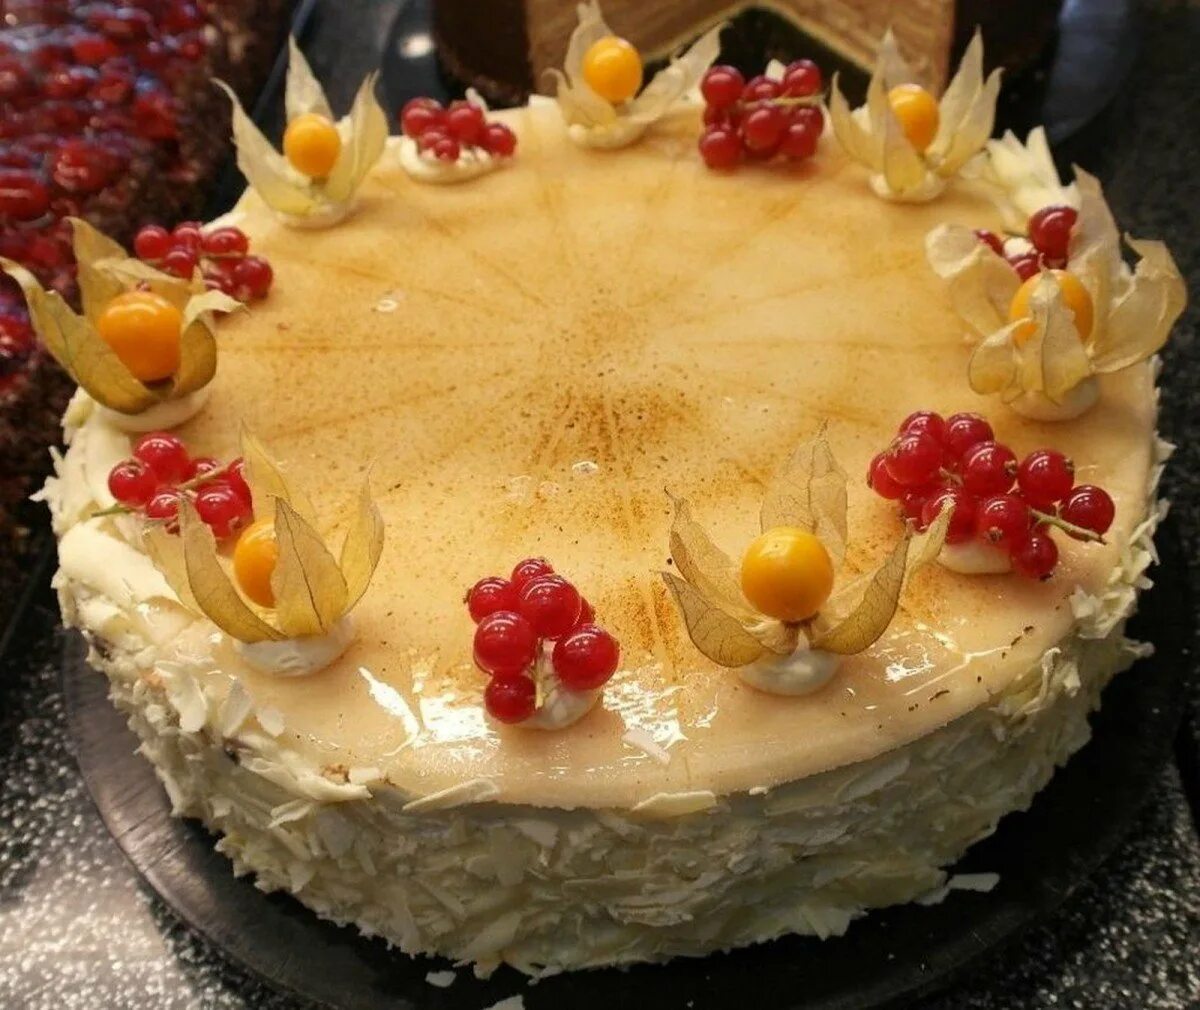 Как украсить наполеон на день рождения. Наполеон украшенный физалисом. Украшение торта Наполеон. Наполеон украшенный фруктами. Украшение торта Наполеон фруктами.